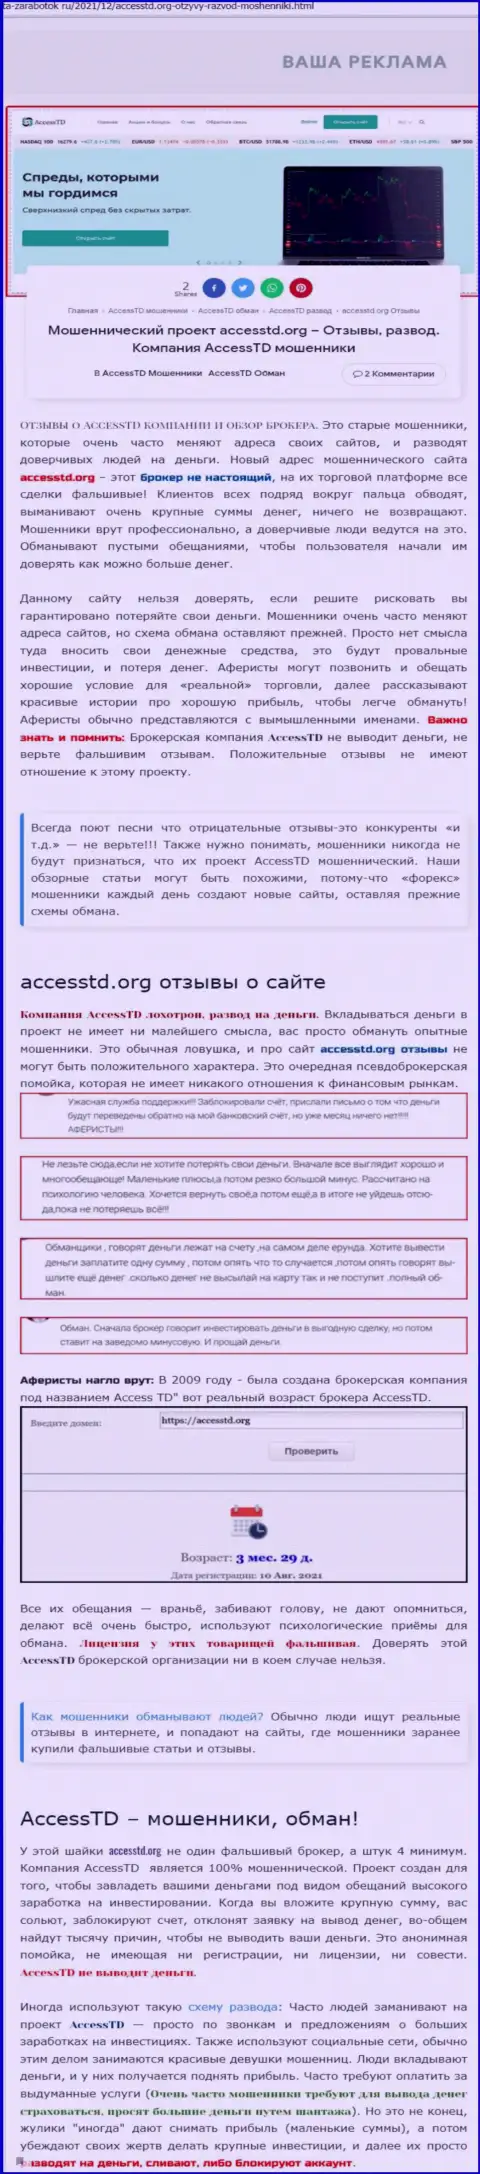 AccessTD Org - это ЖУЛИКИ !!! Обзор противозаконных деяний компании и отзывы из первых рук реальных клиентов